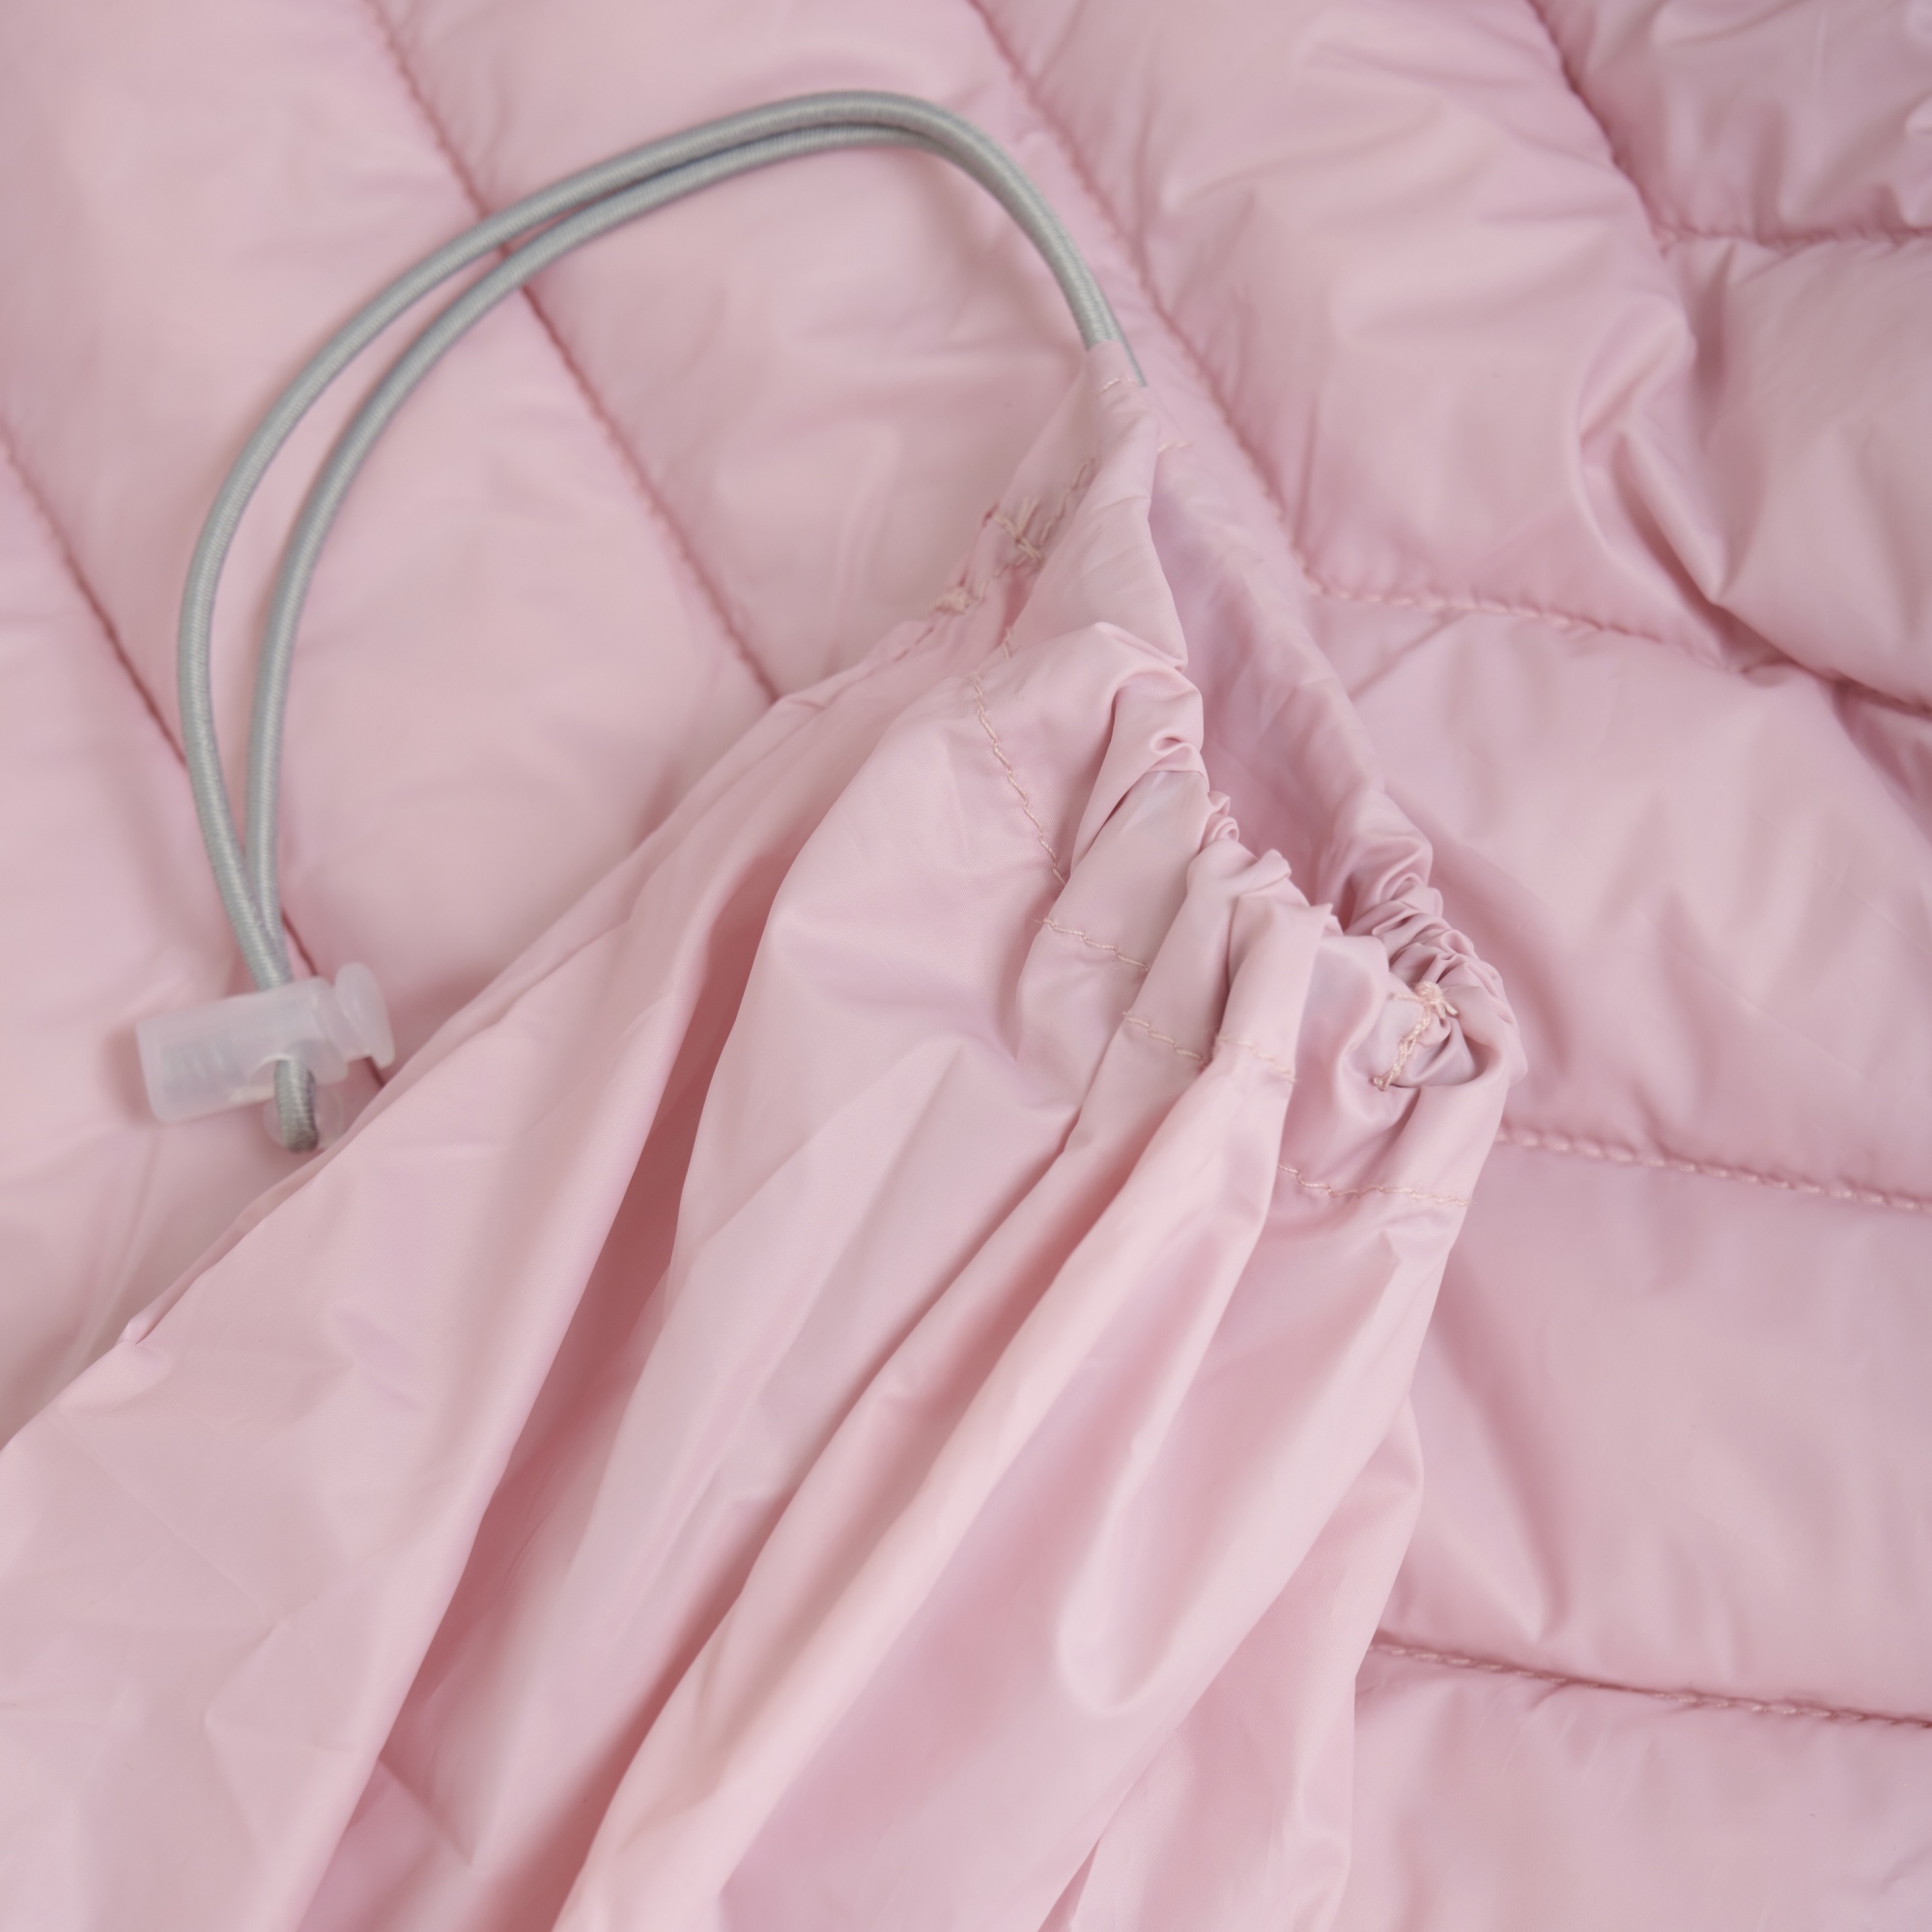 Детская стеганая куртка Color Kids Розовая | фото